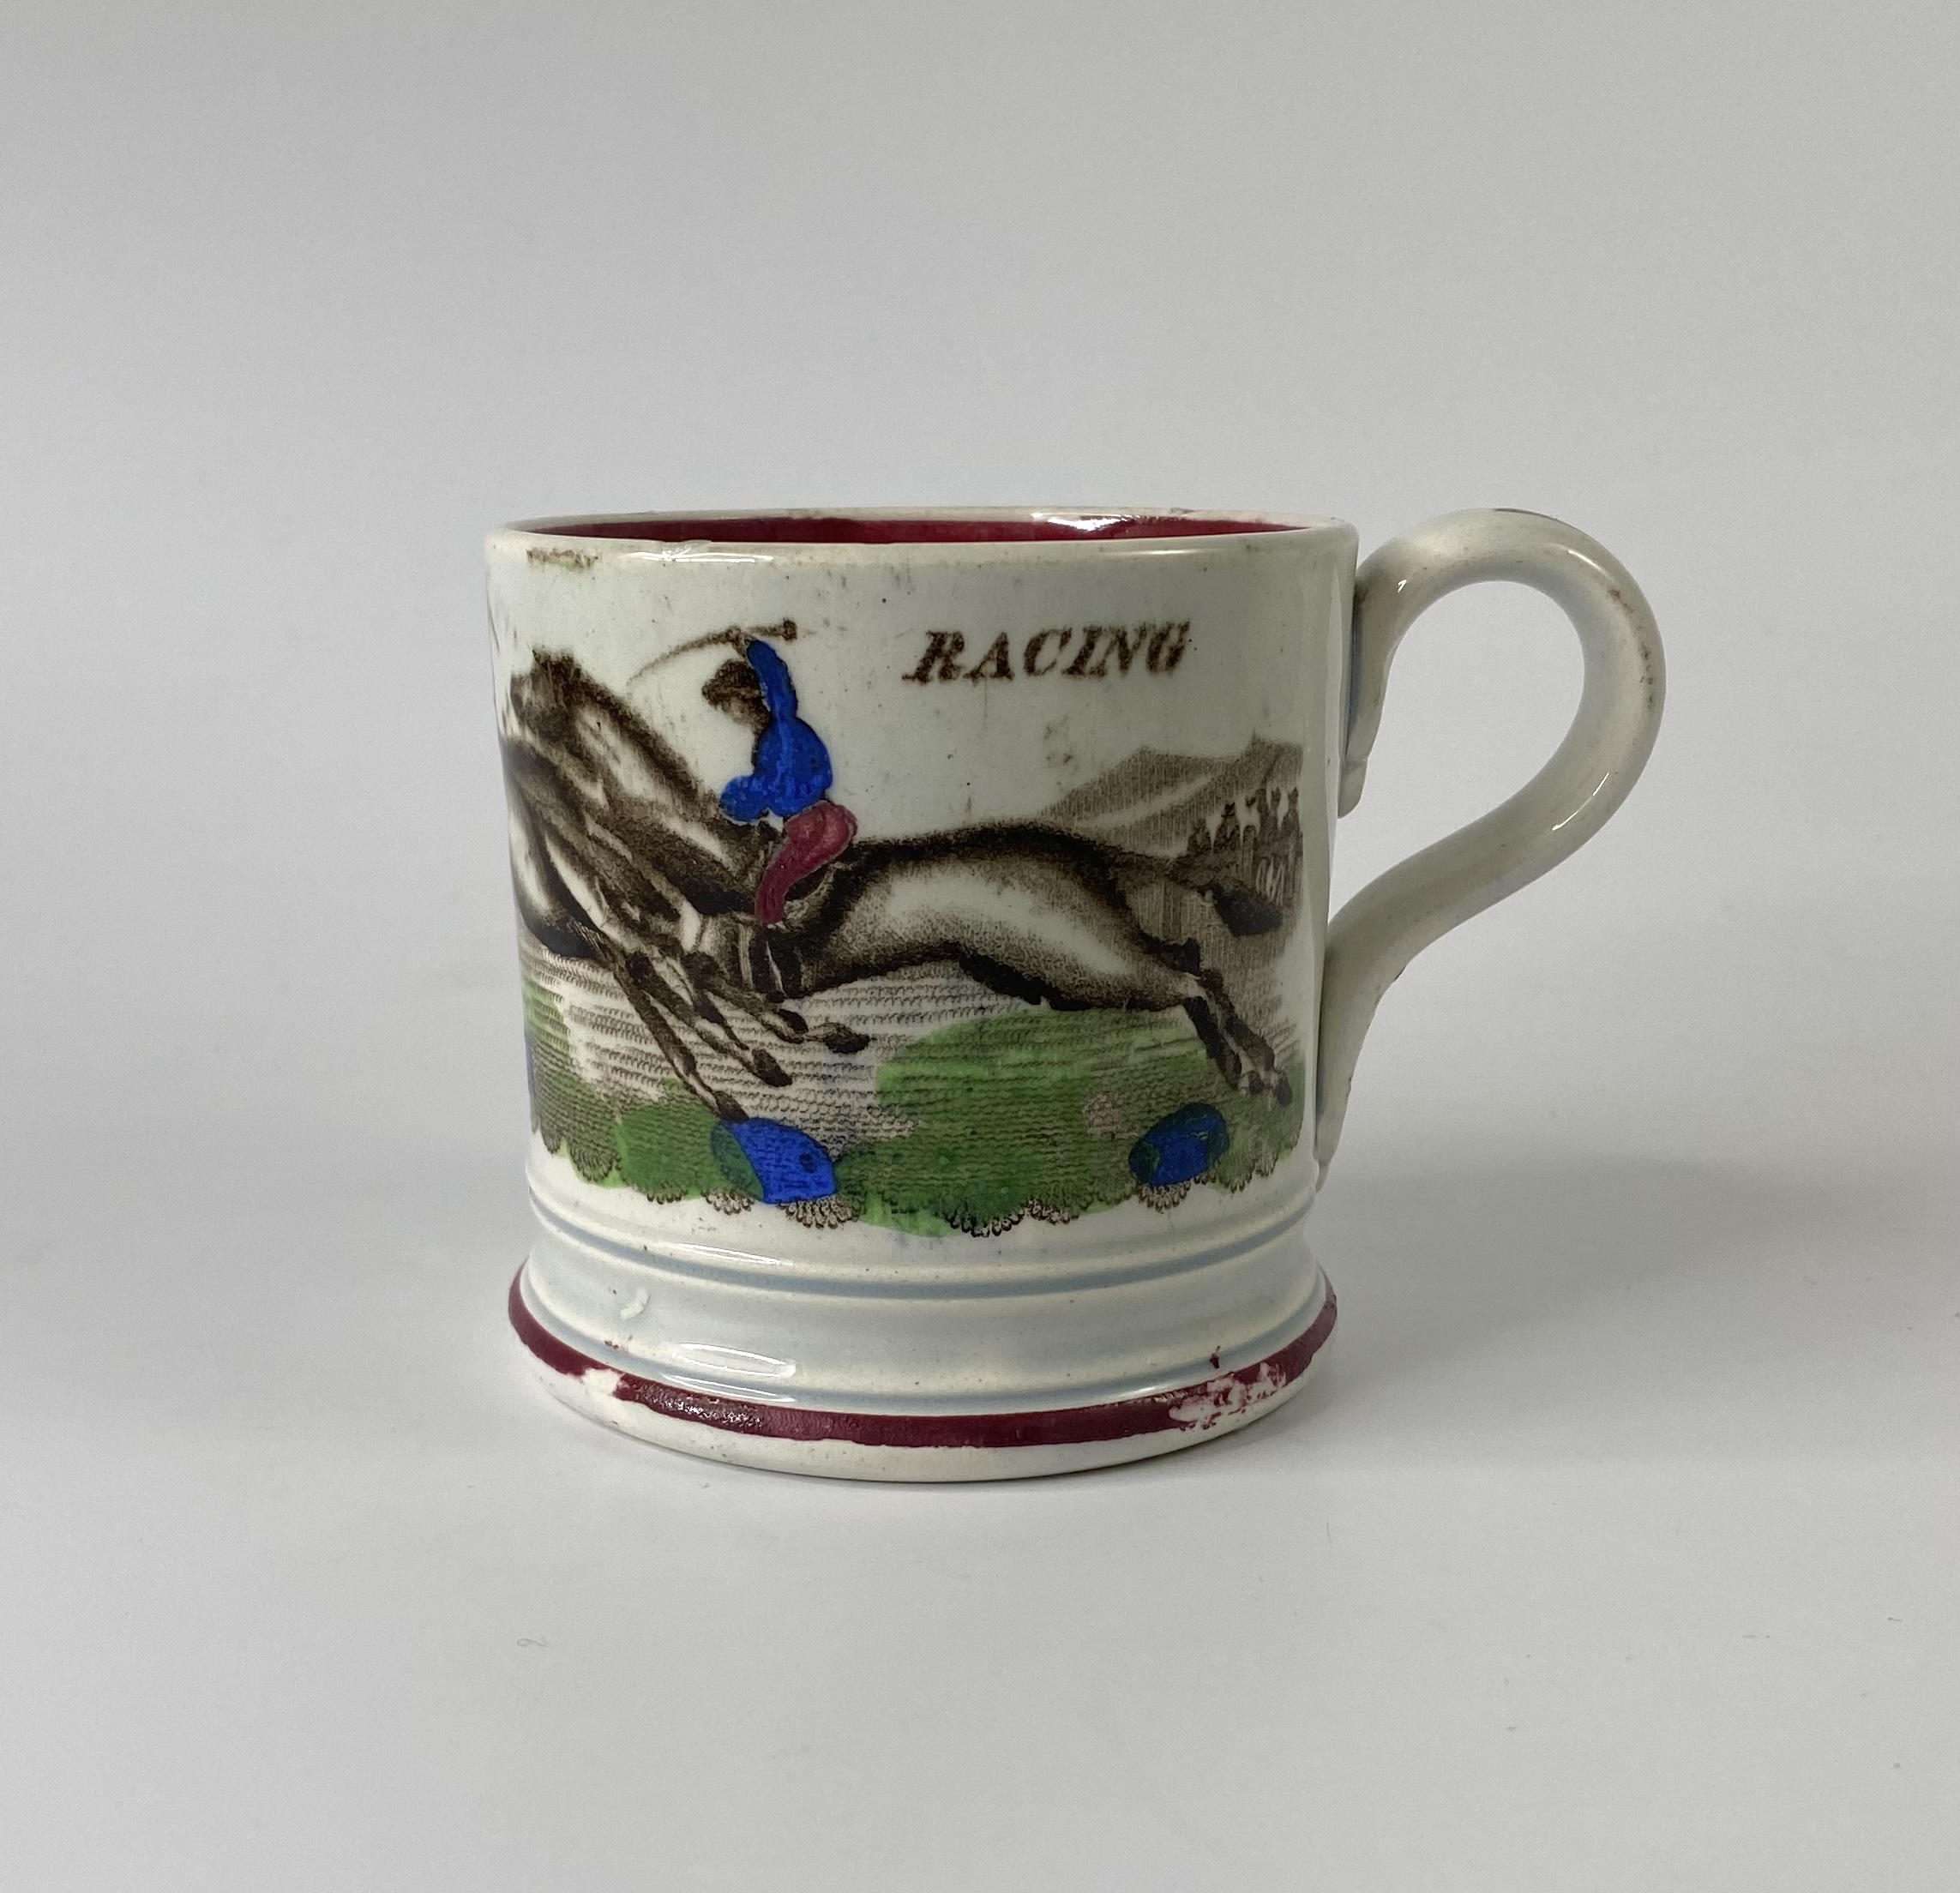 English pottery ‘Racing’ mug, c. 1840